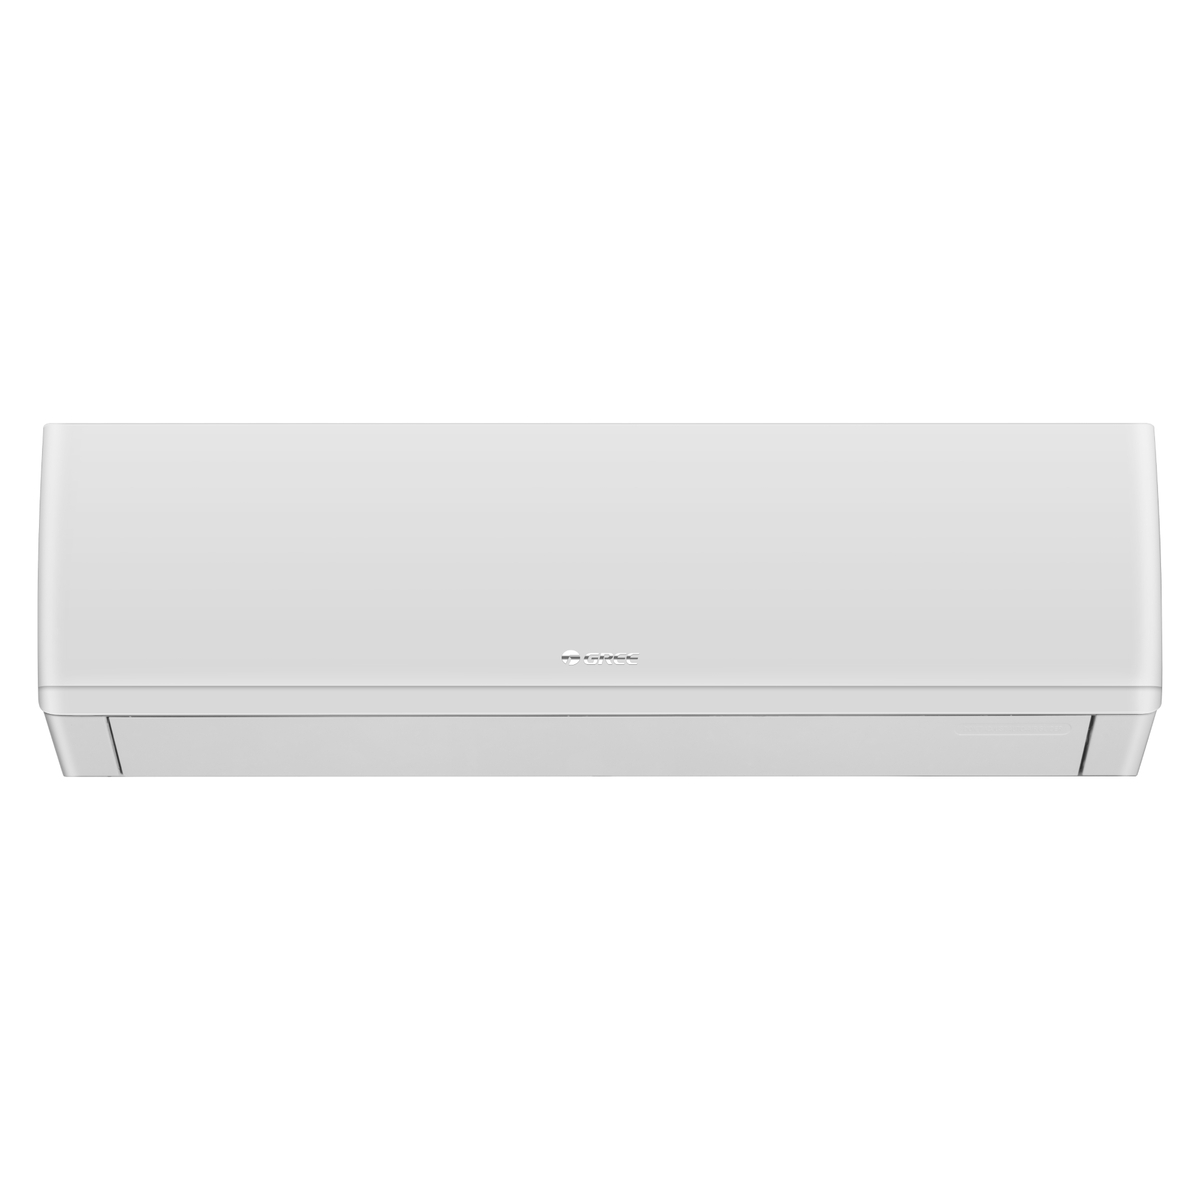 Gree Split Air Conditioner, 1 Ton, White, iSavePlus-P12H3